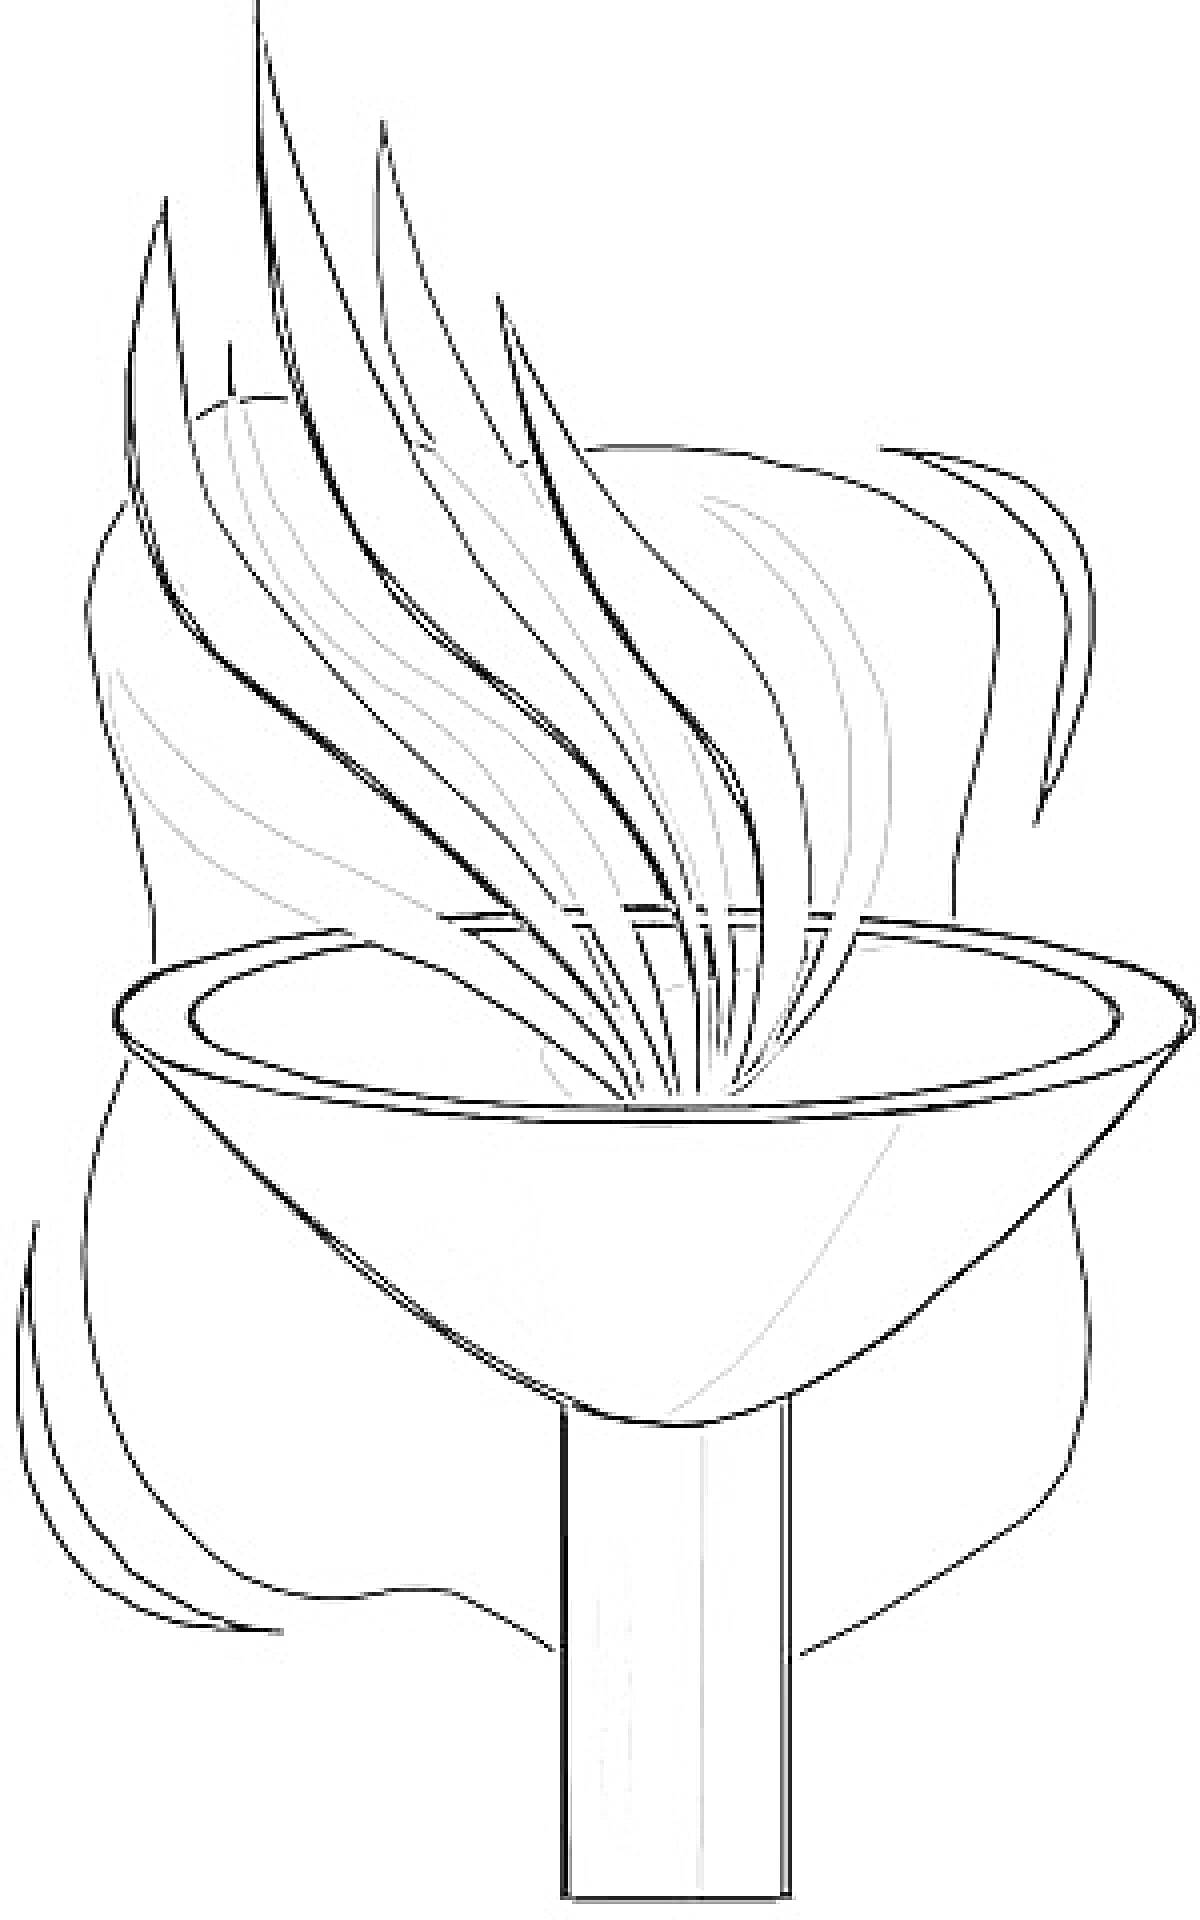 Олимпийский огонь в чаше с разрушенным фоном